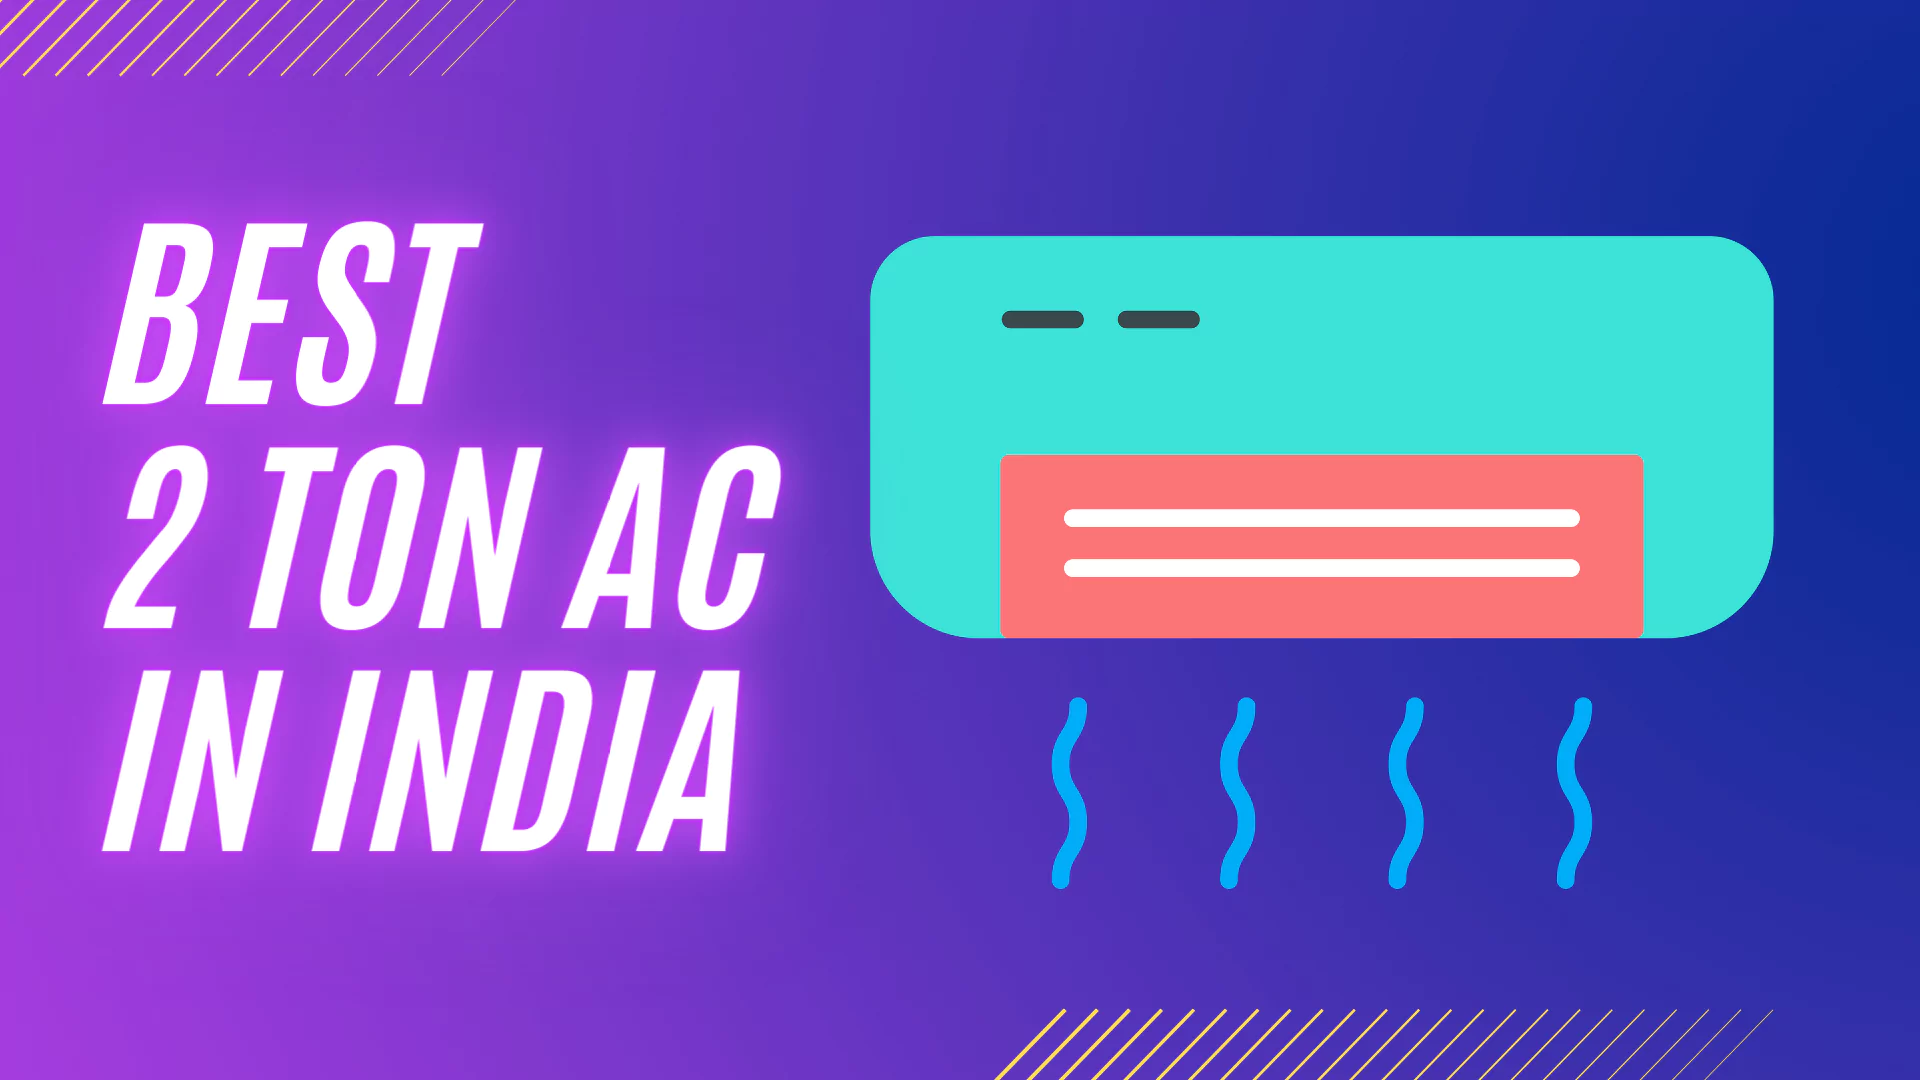 Best 2 Ton AC in India